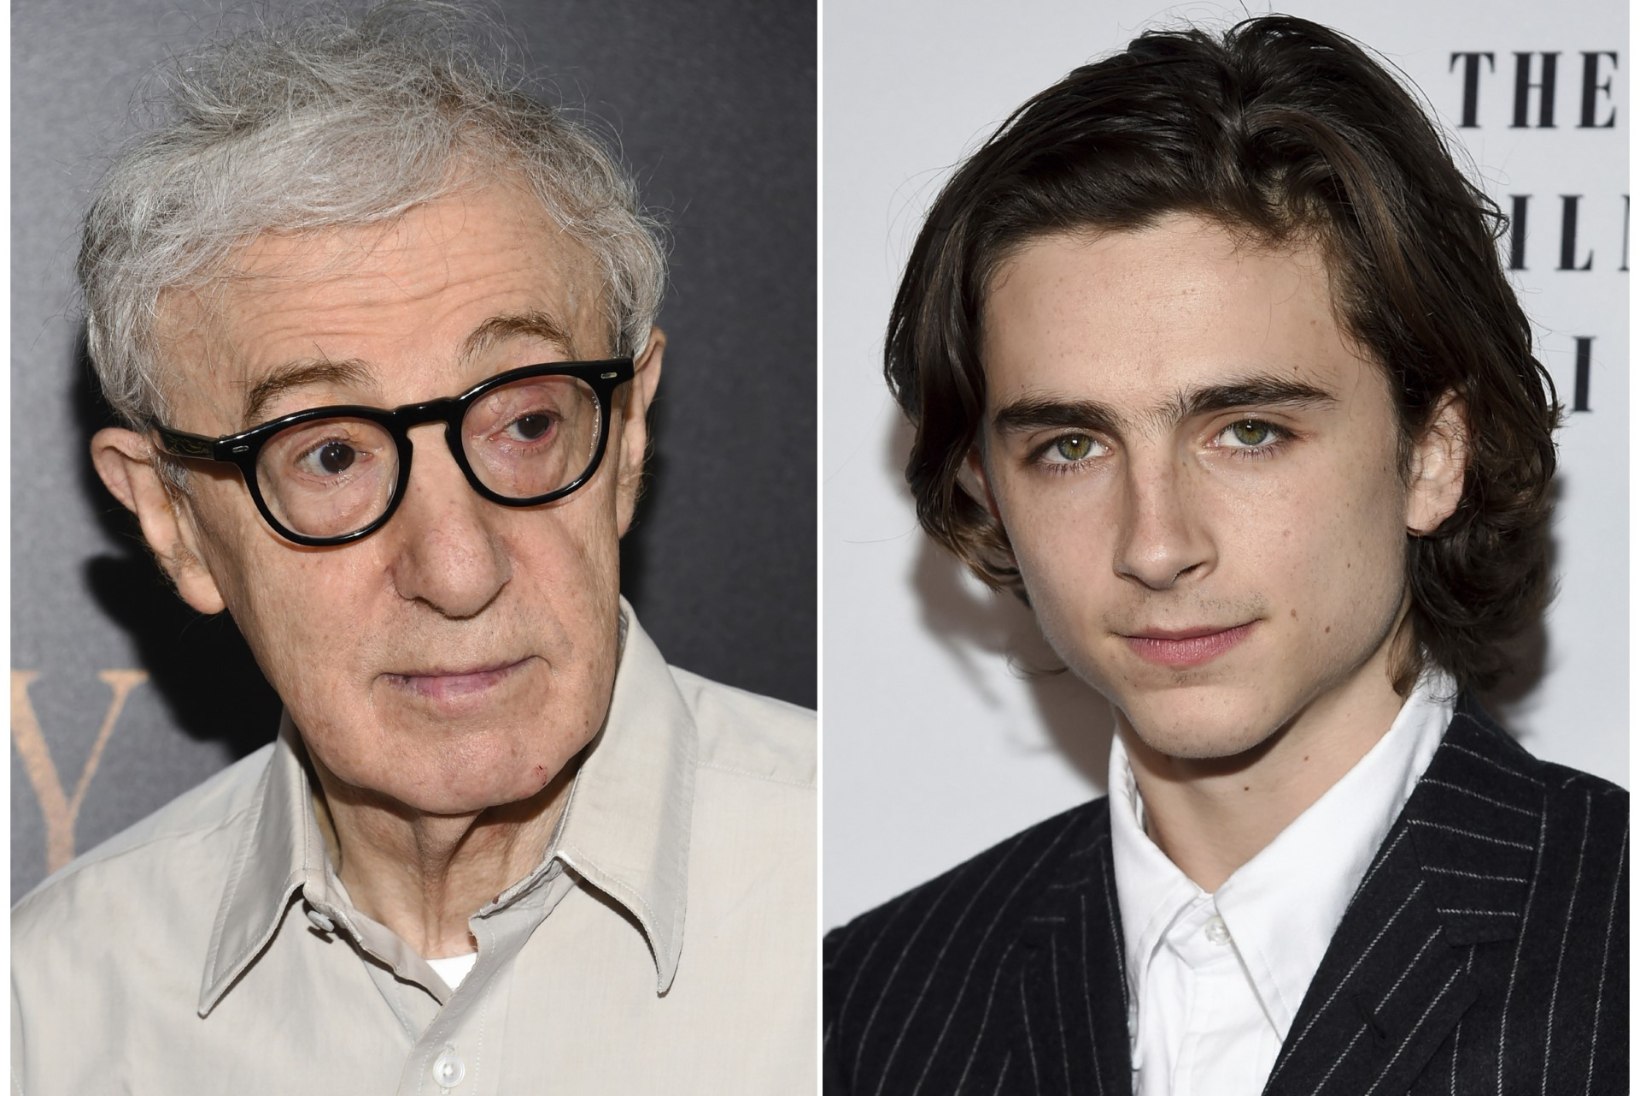 Näitleja Timothée Chalamet annetas ahistajaks nimetatud Woody Alleni filmist teenitud palga feministlikule liikumisele